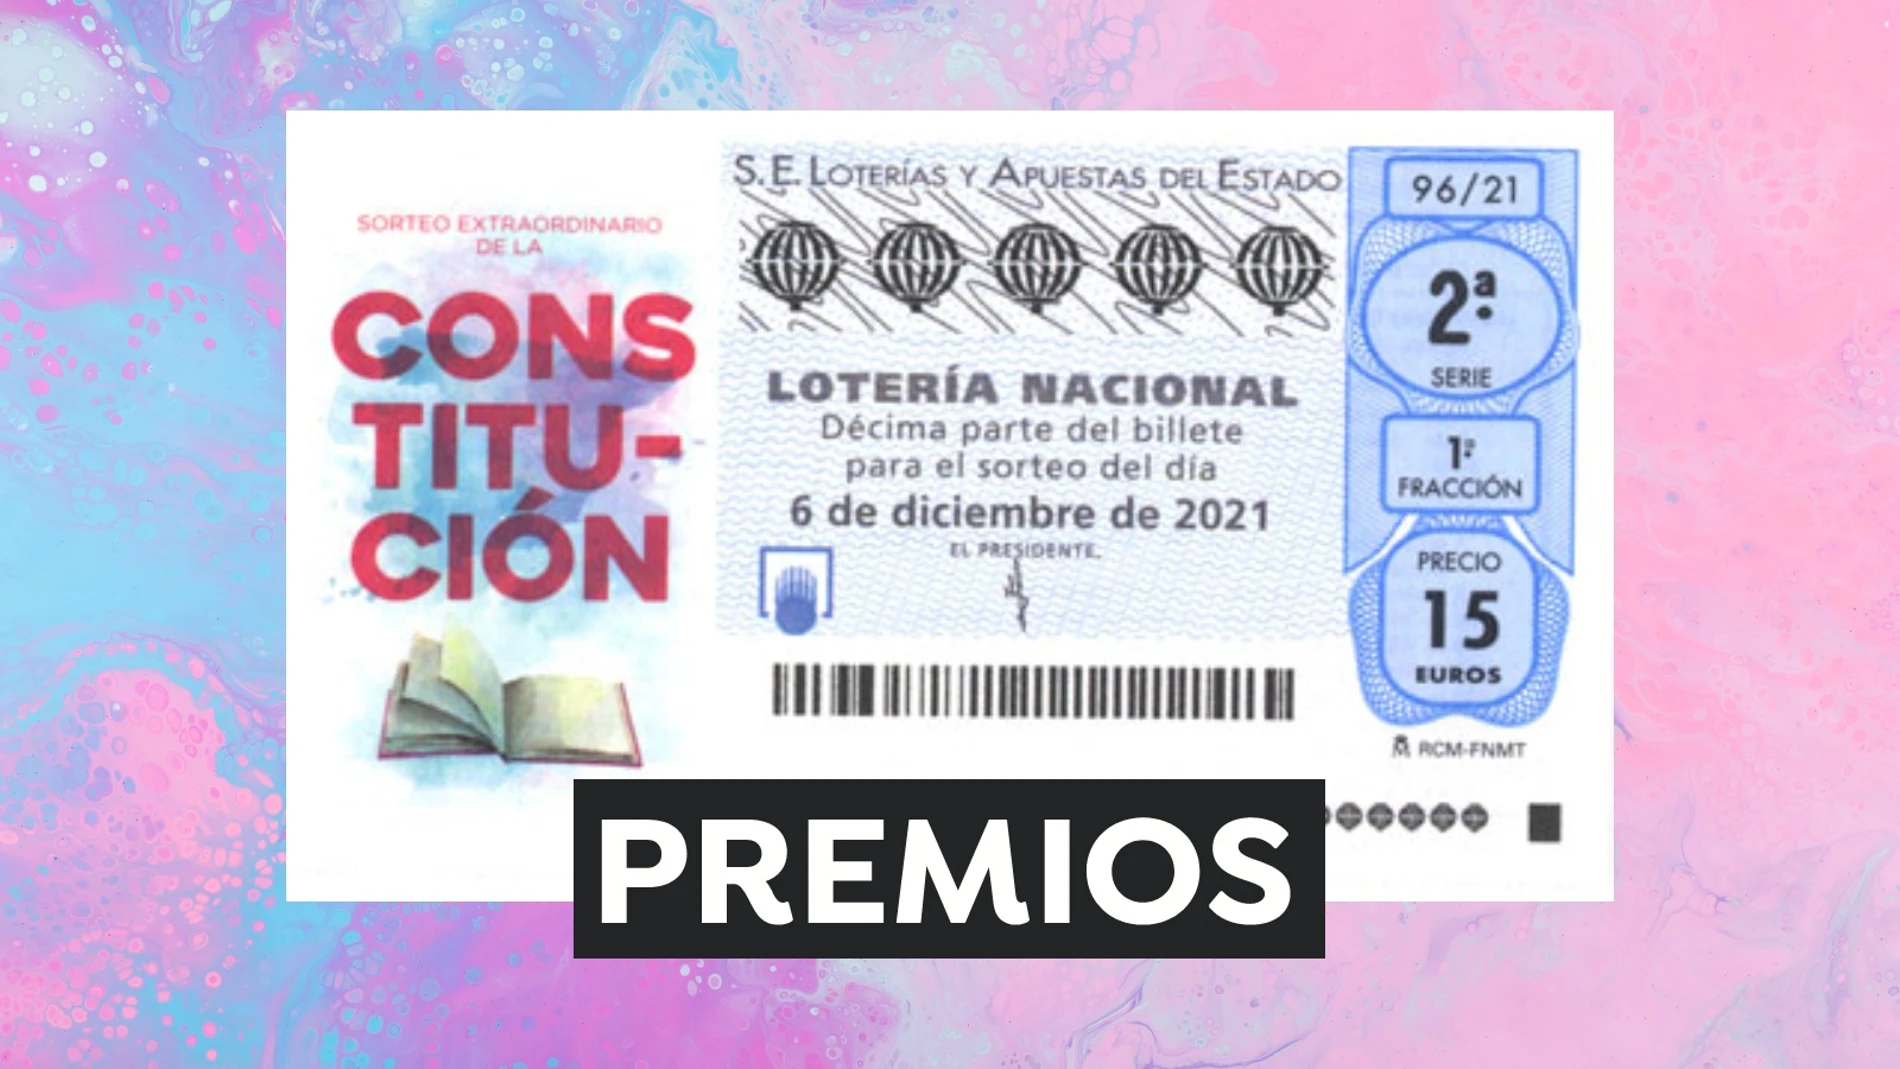 Premios del Sorteo Extraordinario de la Constitución de Lotería Nacional 2021 